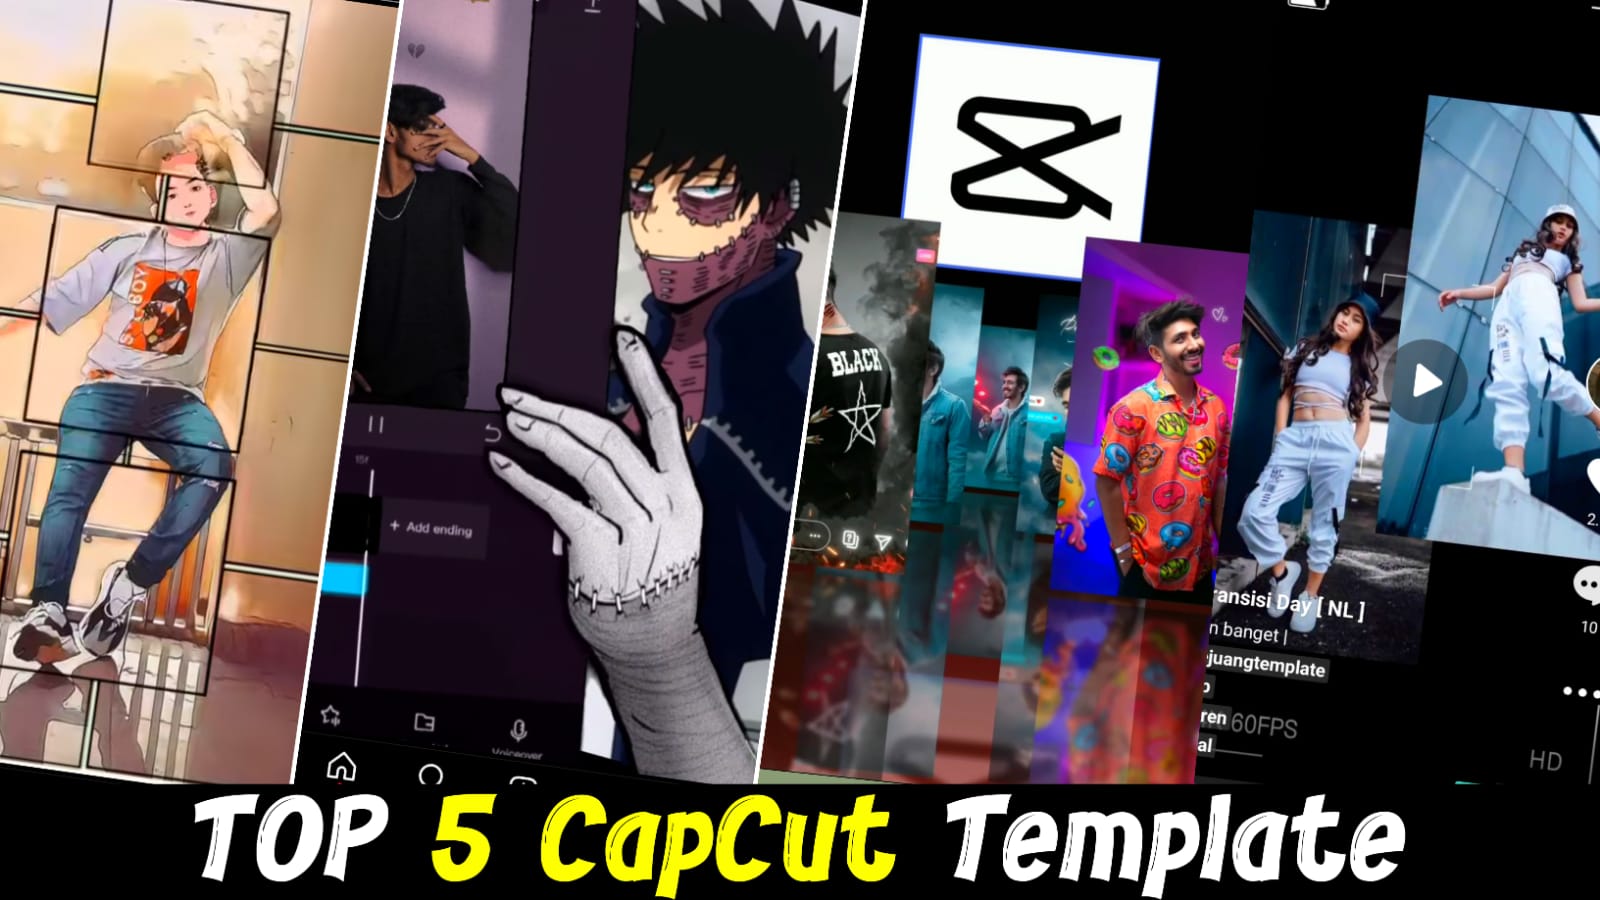 Top 5 new capcut template link 2023